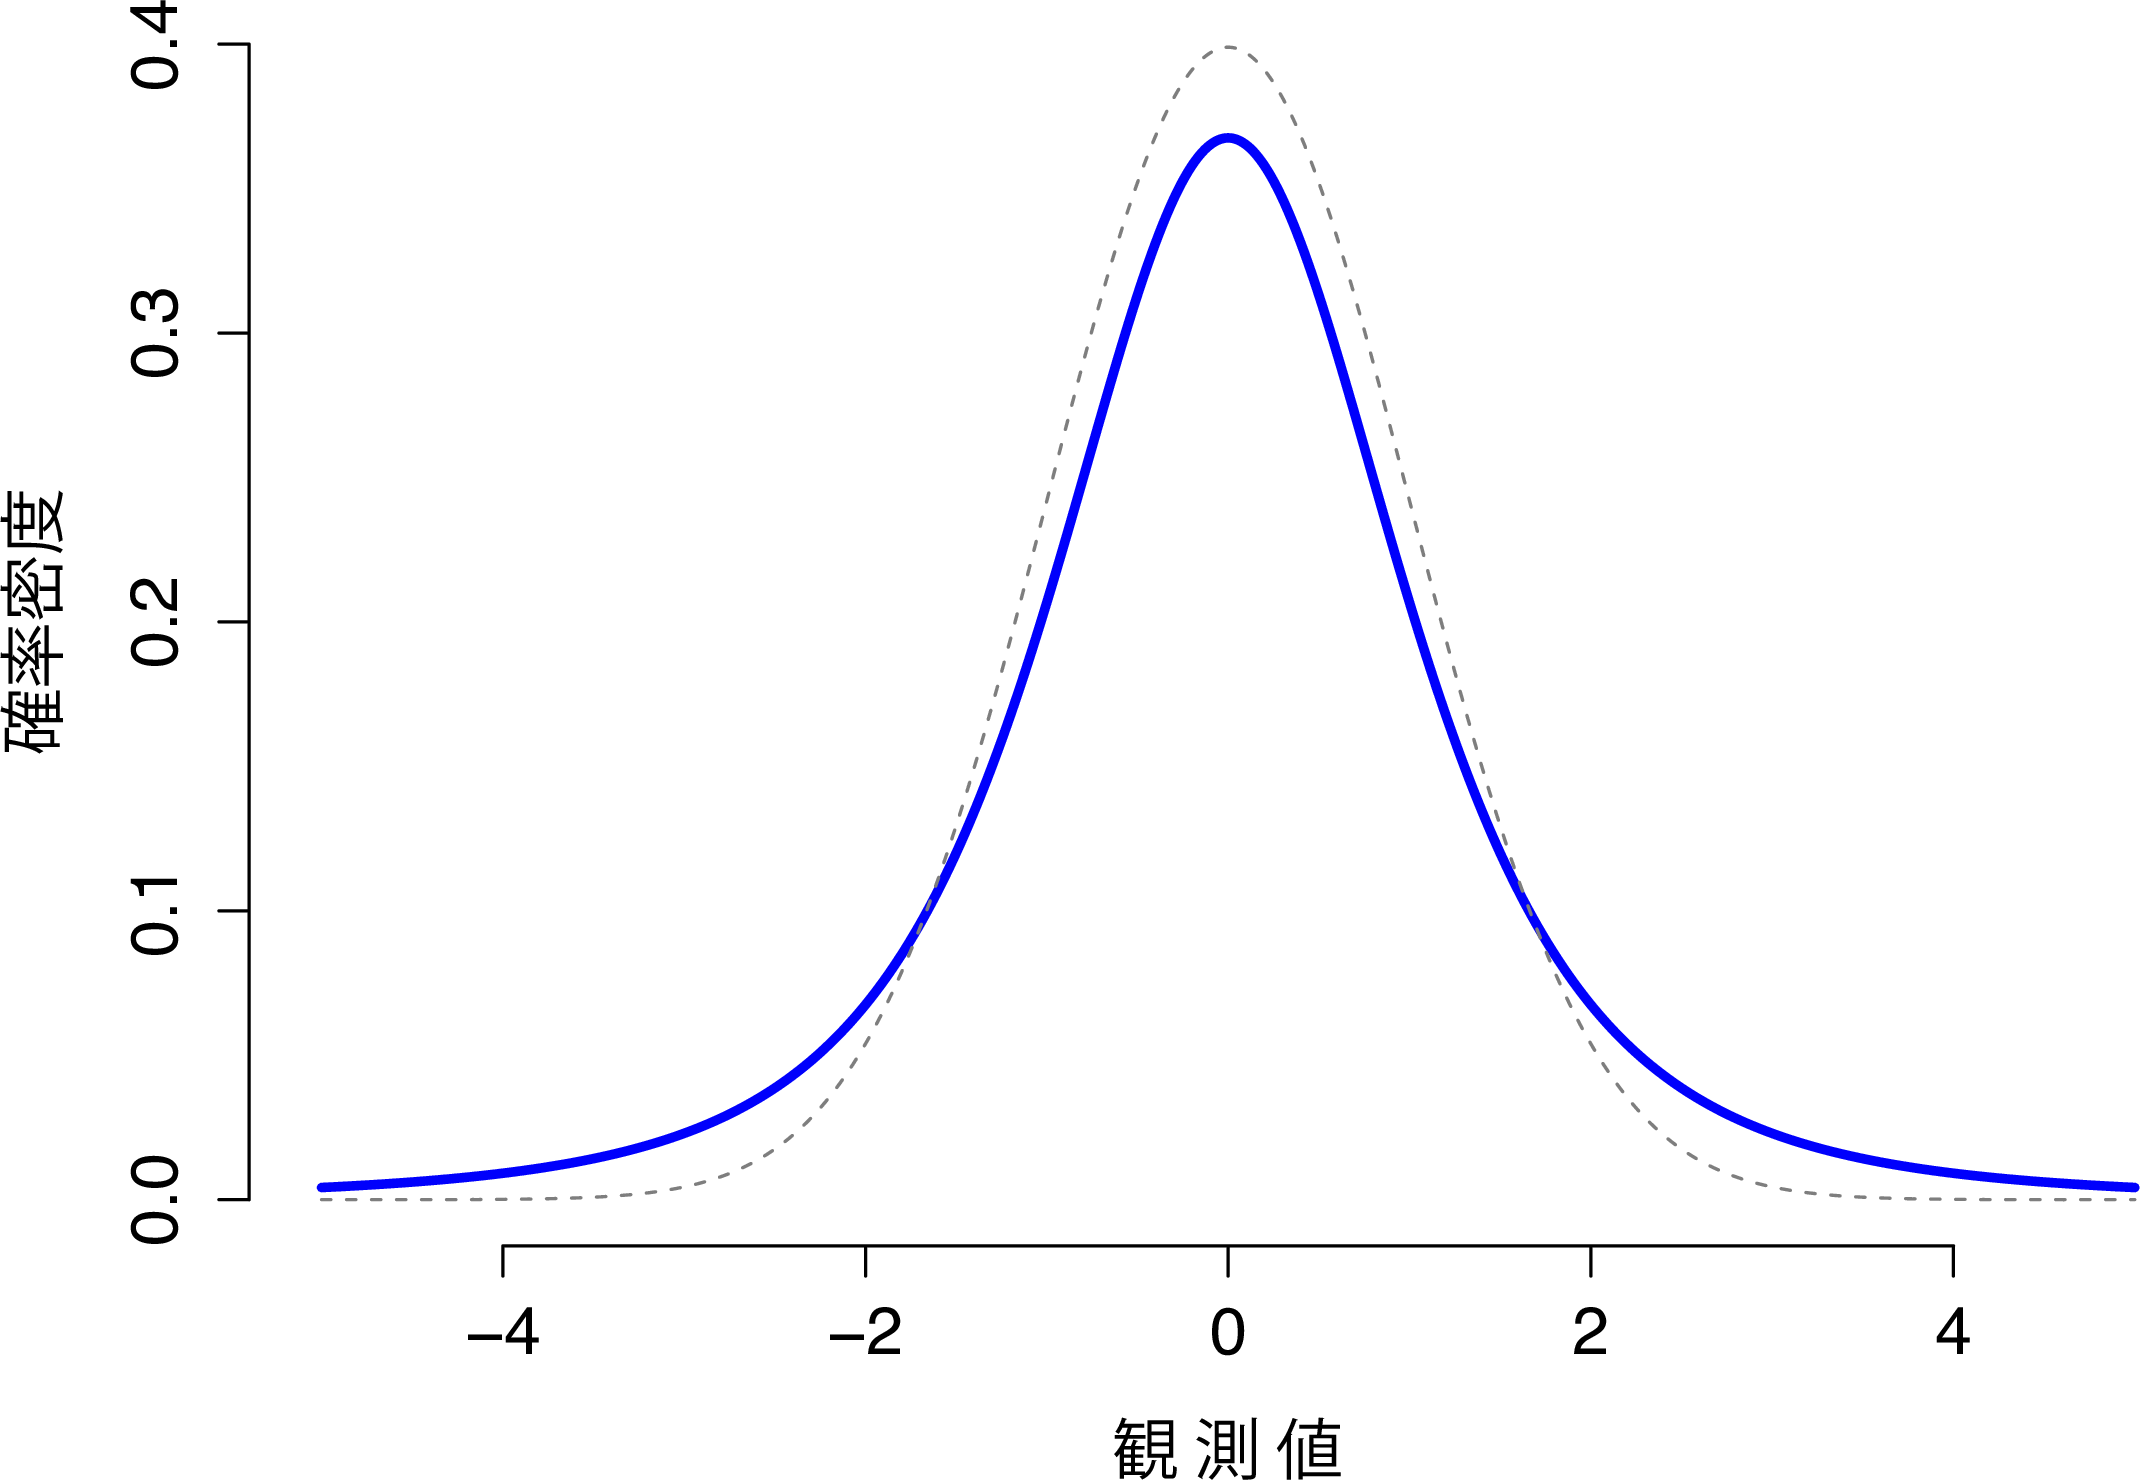 自由度が3の\(t\)分布（実線）。正規分布に似ているが，まったく同じものではない。比較のために，標準正規分布を点線で示してある。